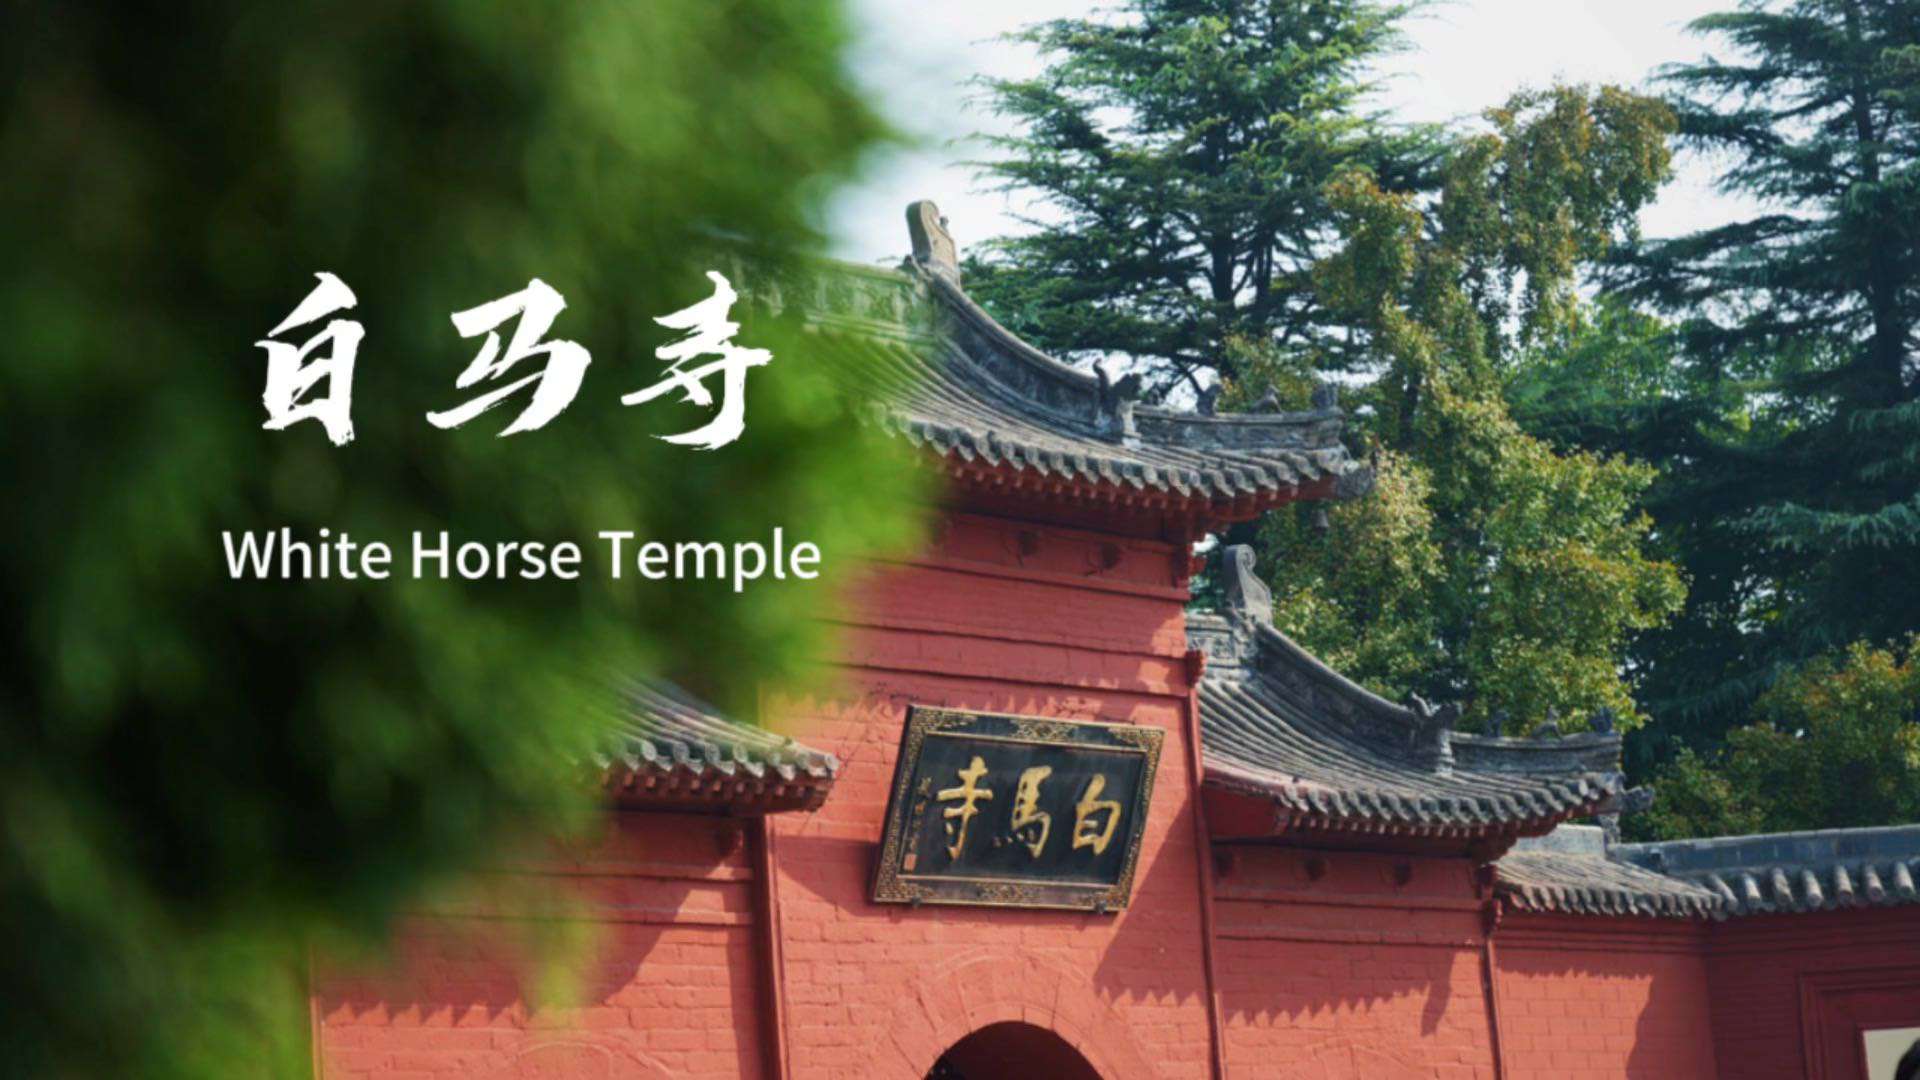 佛教传入中国后兴建的第一座官办寺院——白马寺